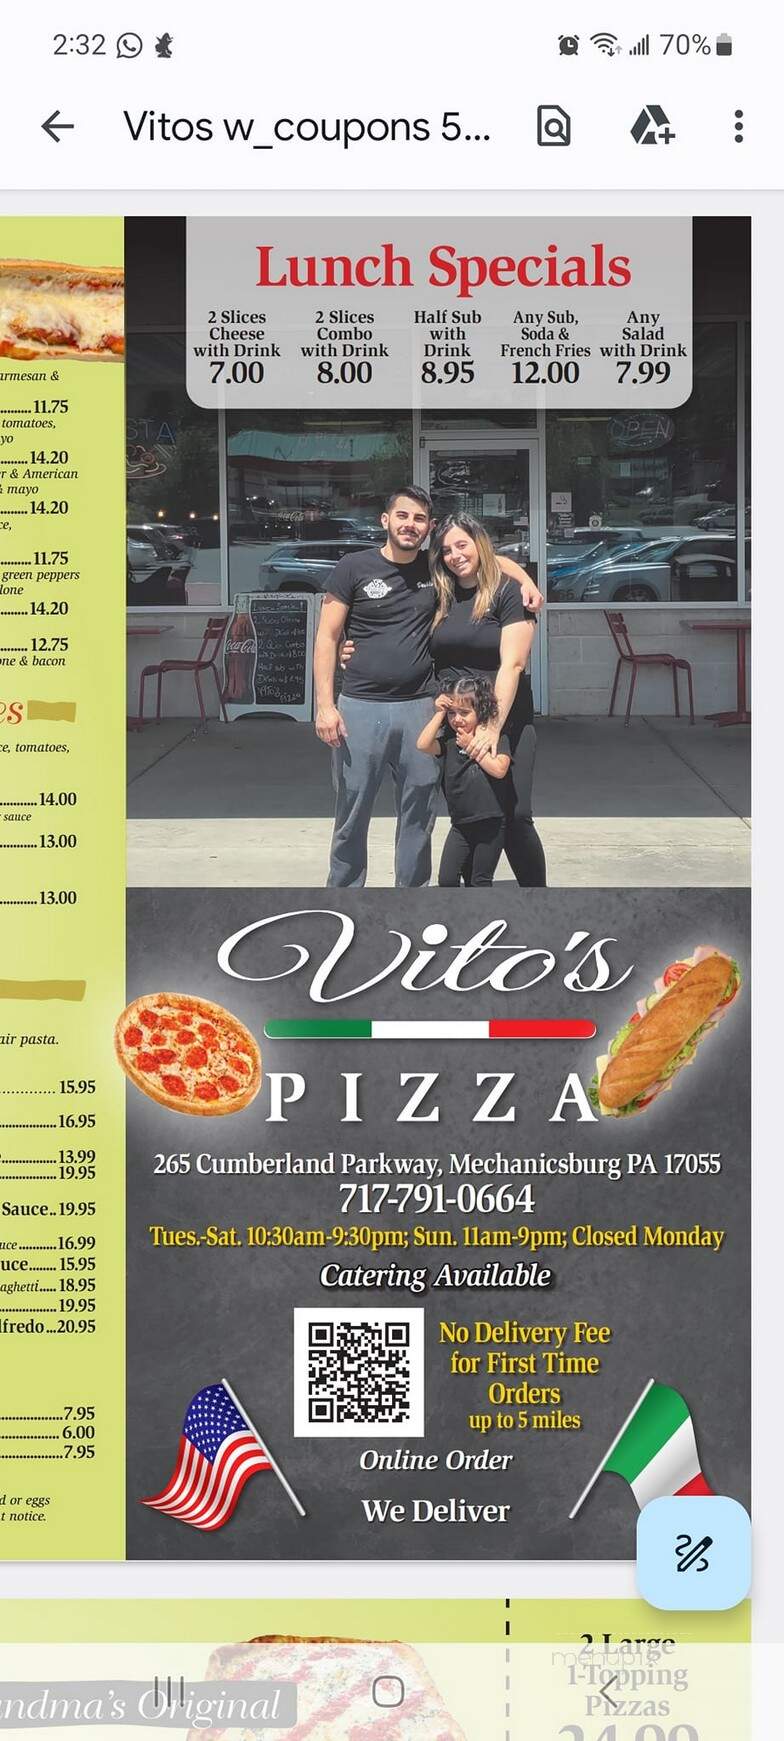 Vito's Pizza & Restaurant - Zionsville, PA